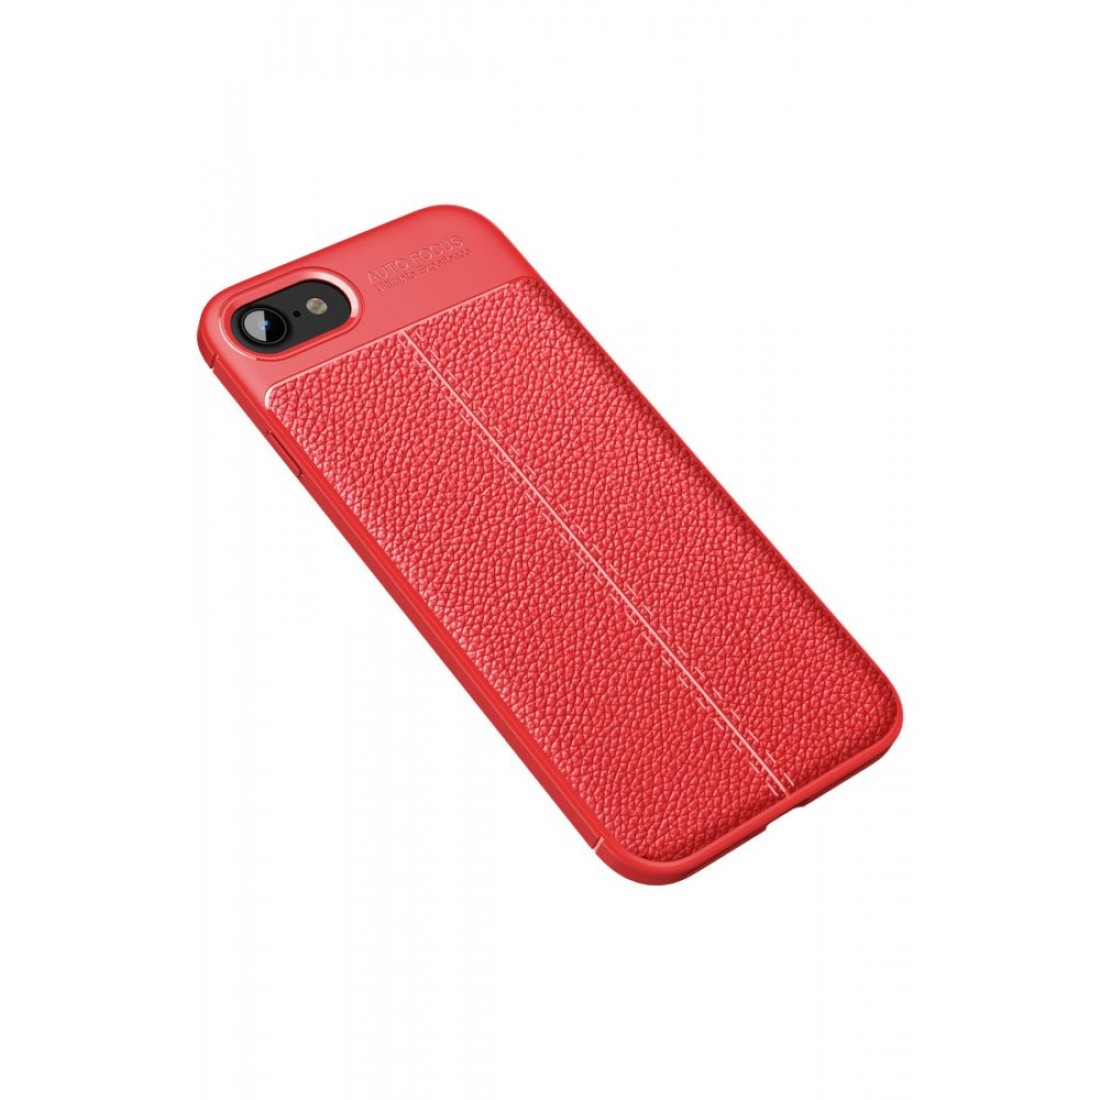 Apple iPhone 7 Kılıf Focus Derili Silikon - Kırmızı